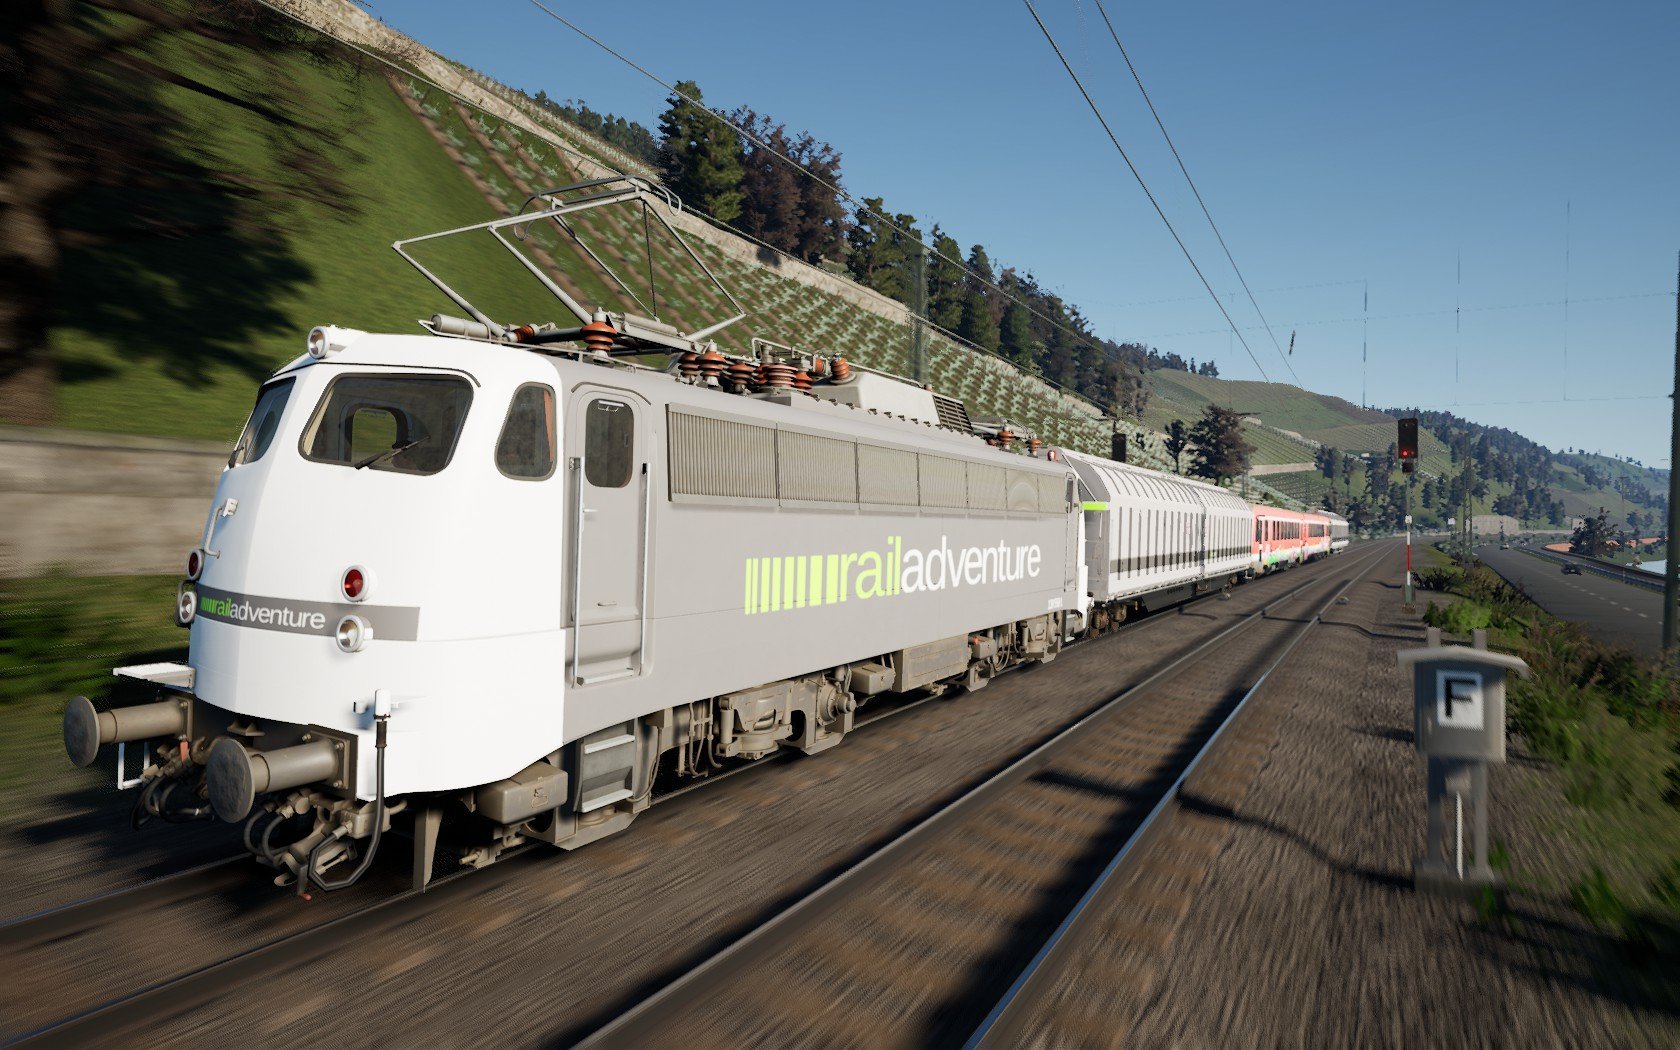 Railadventure transport